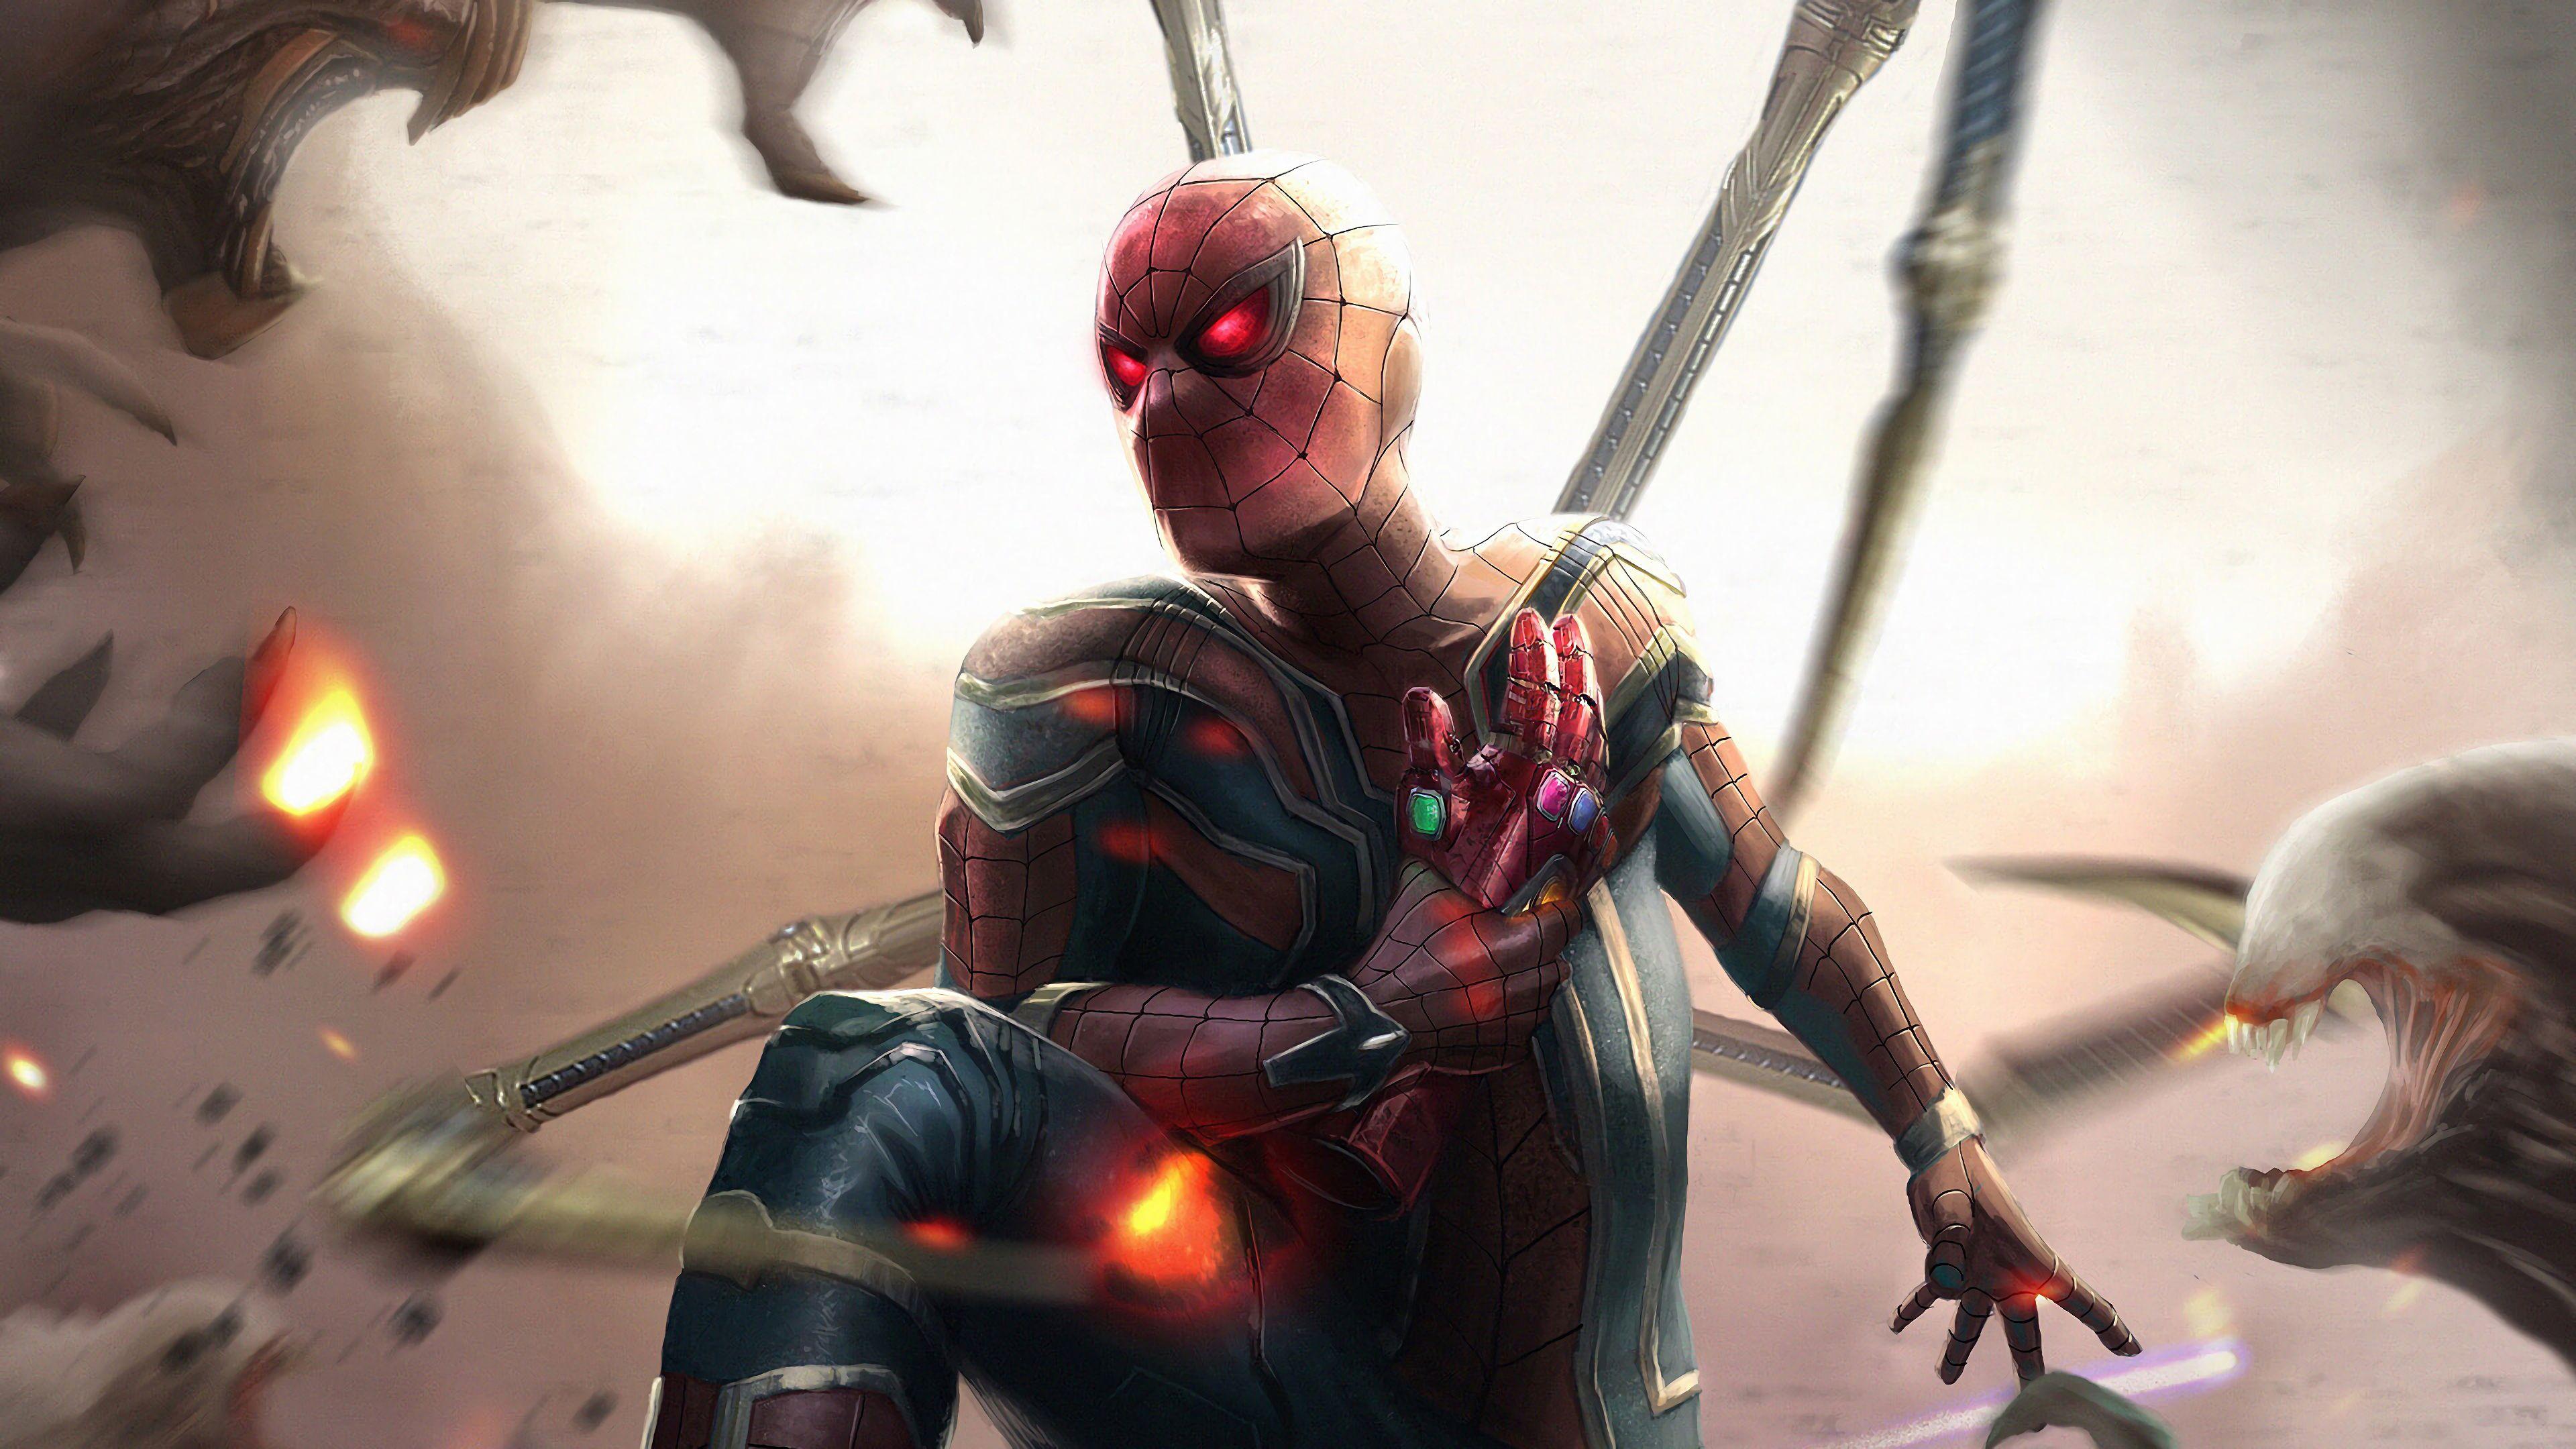 Avengers - Endgame : Iron man Wallpaper #Marvel #Ironman #Avengers  #avengersendgame #avengersinfinitywar